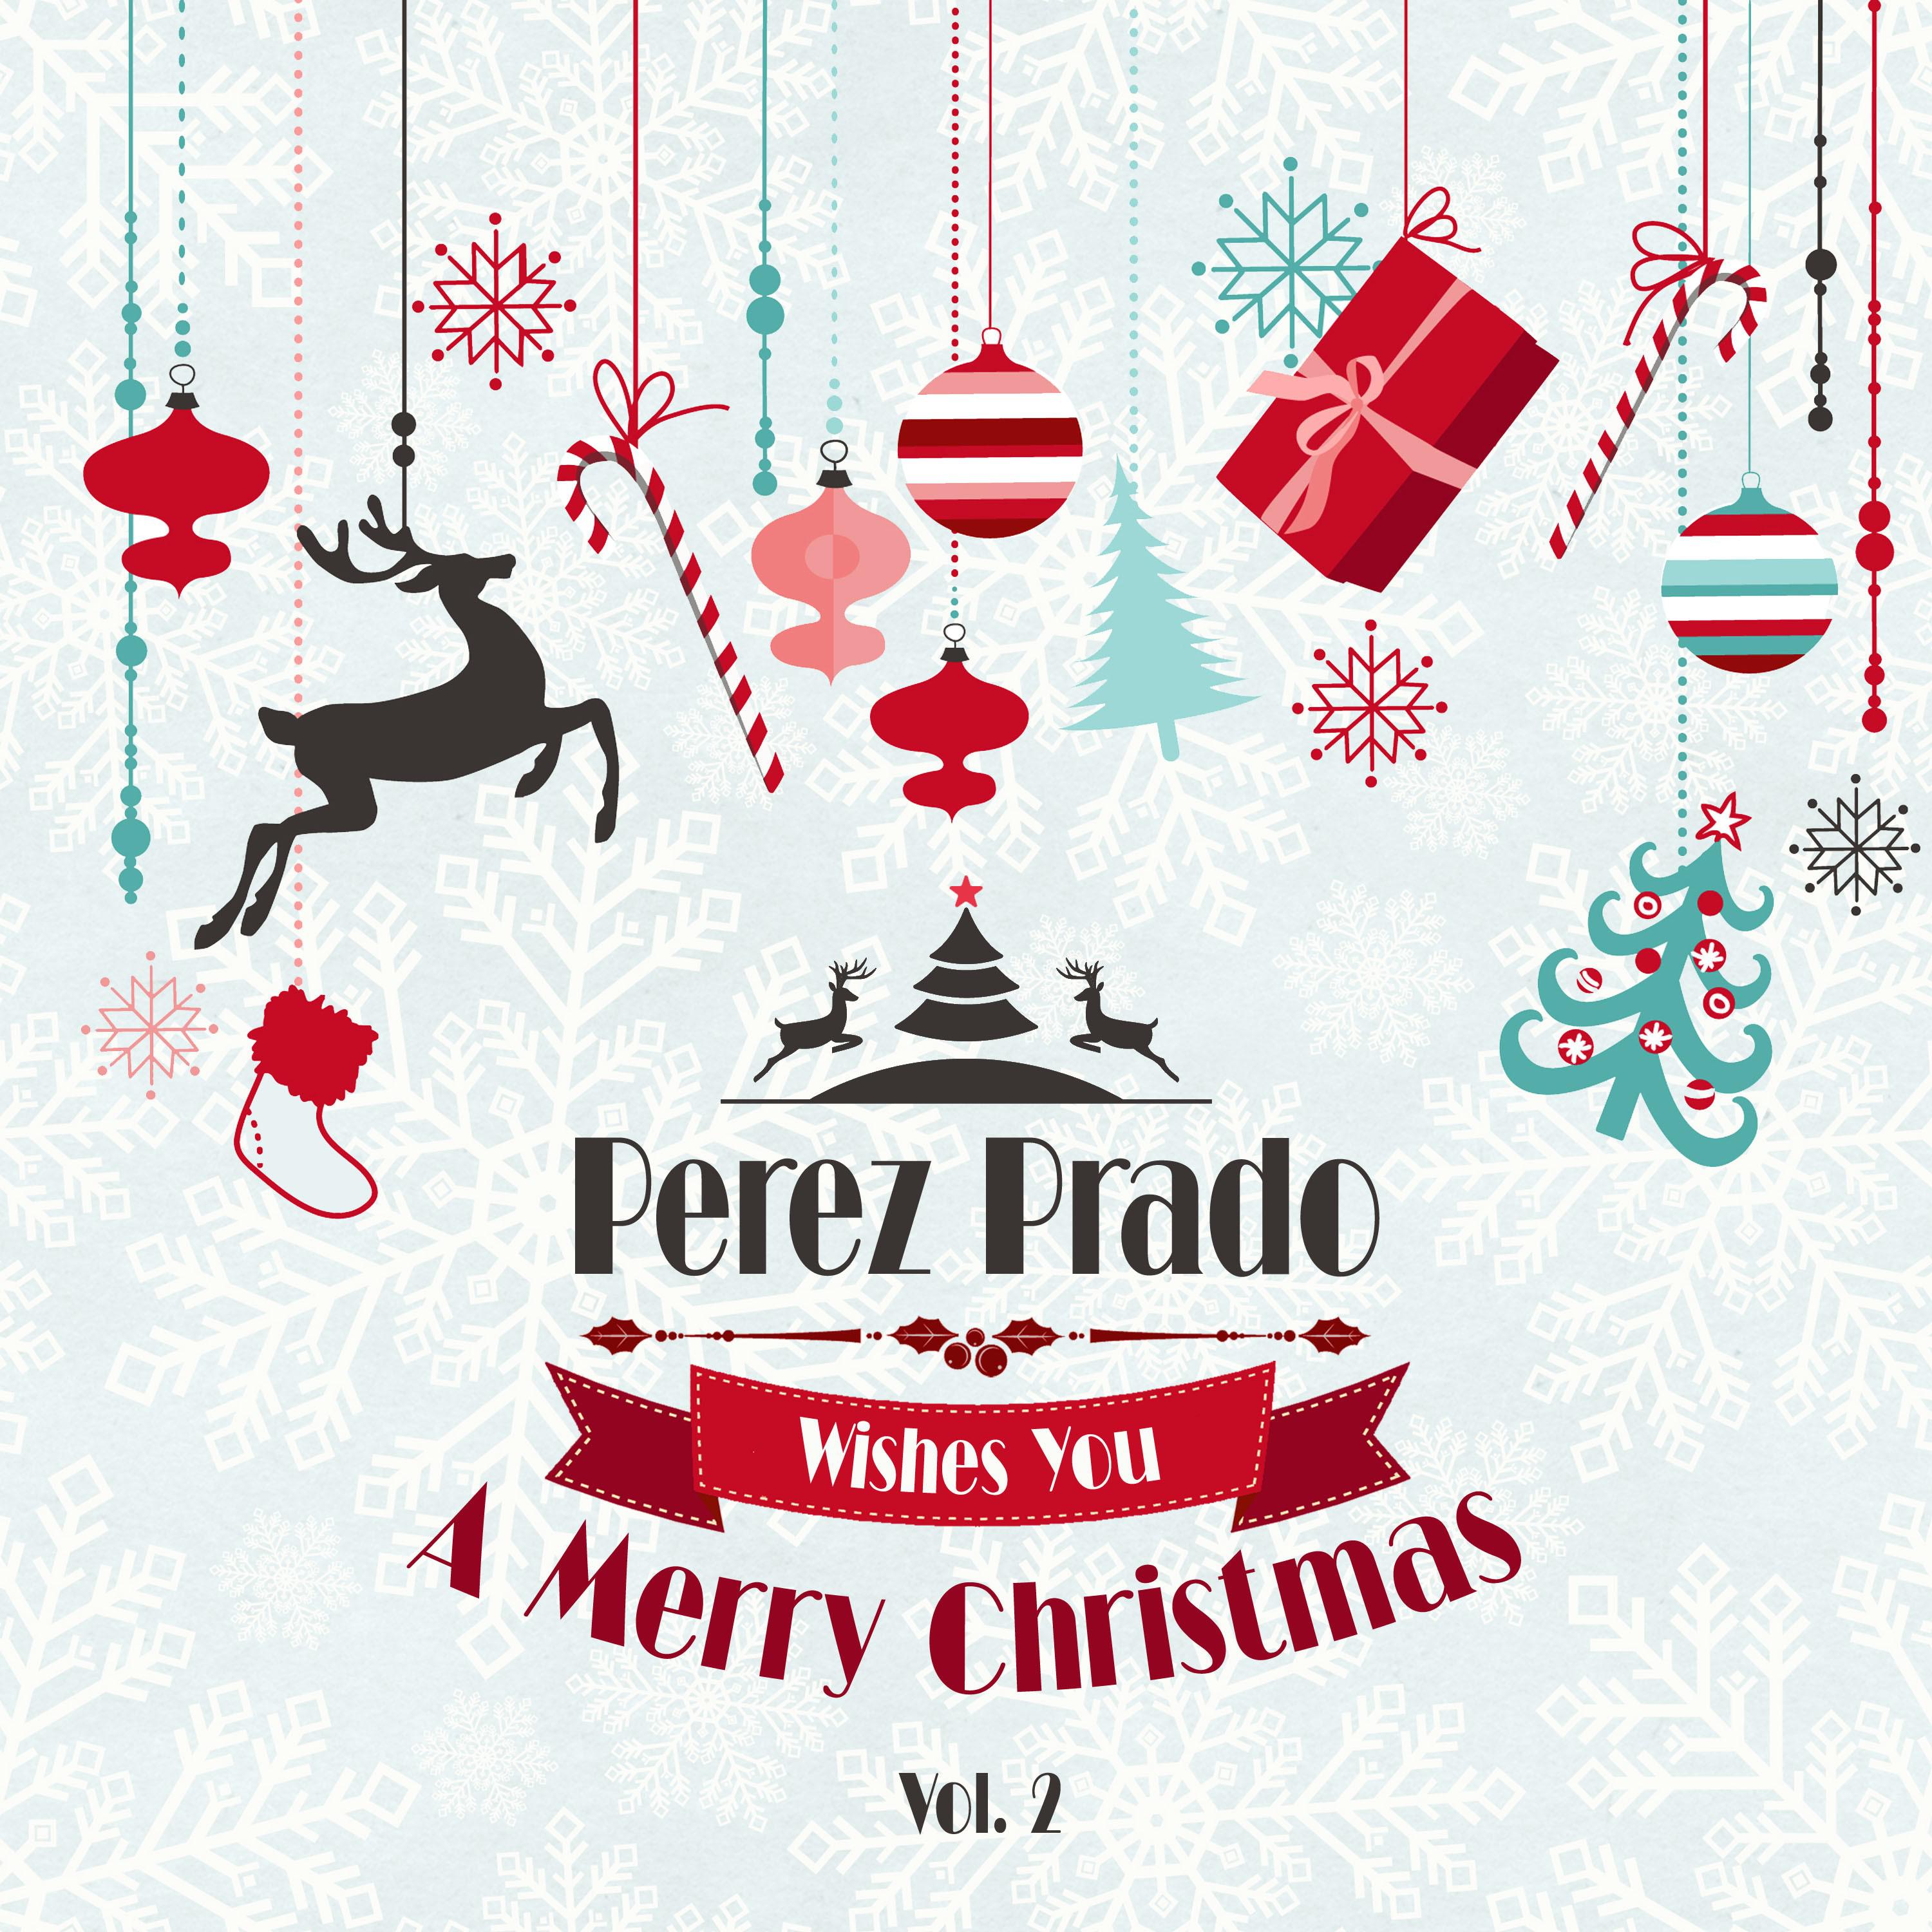 Perez Prado Wishes You a Merry Christmas, Vol. 2